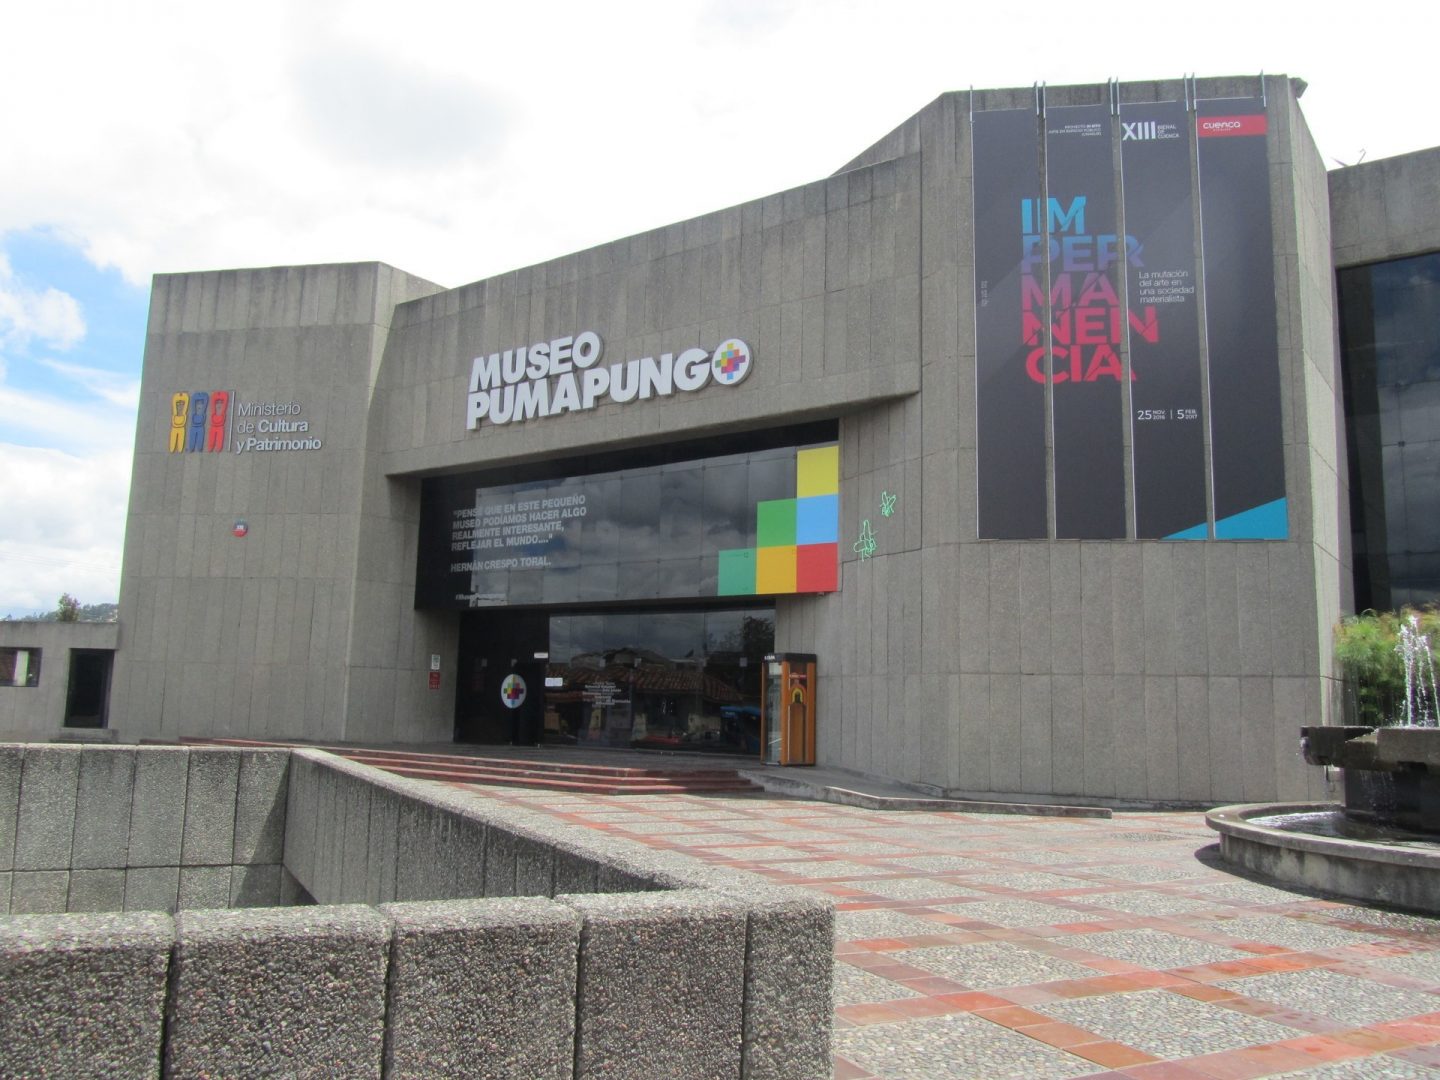 Museo Pumapungo, Cuenca, Ecuador